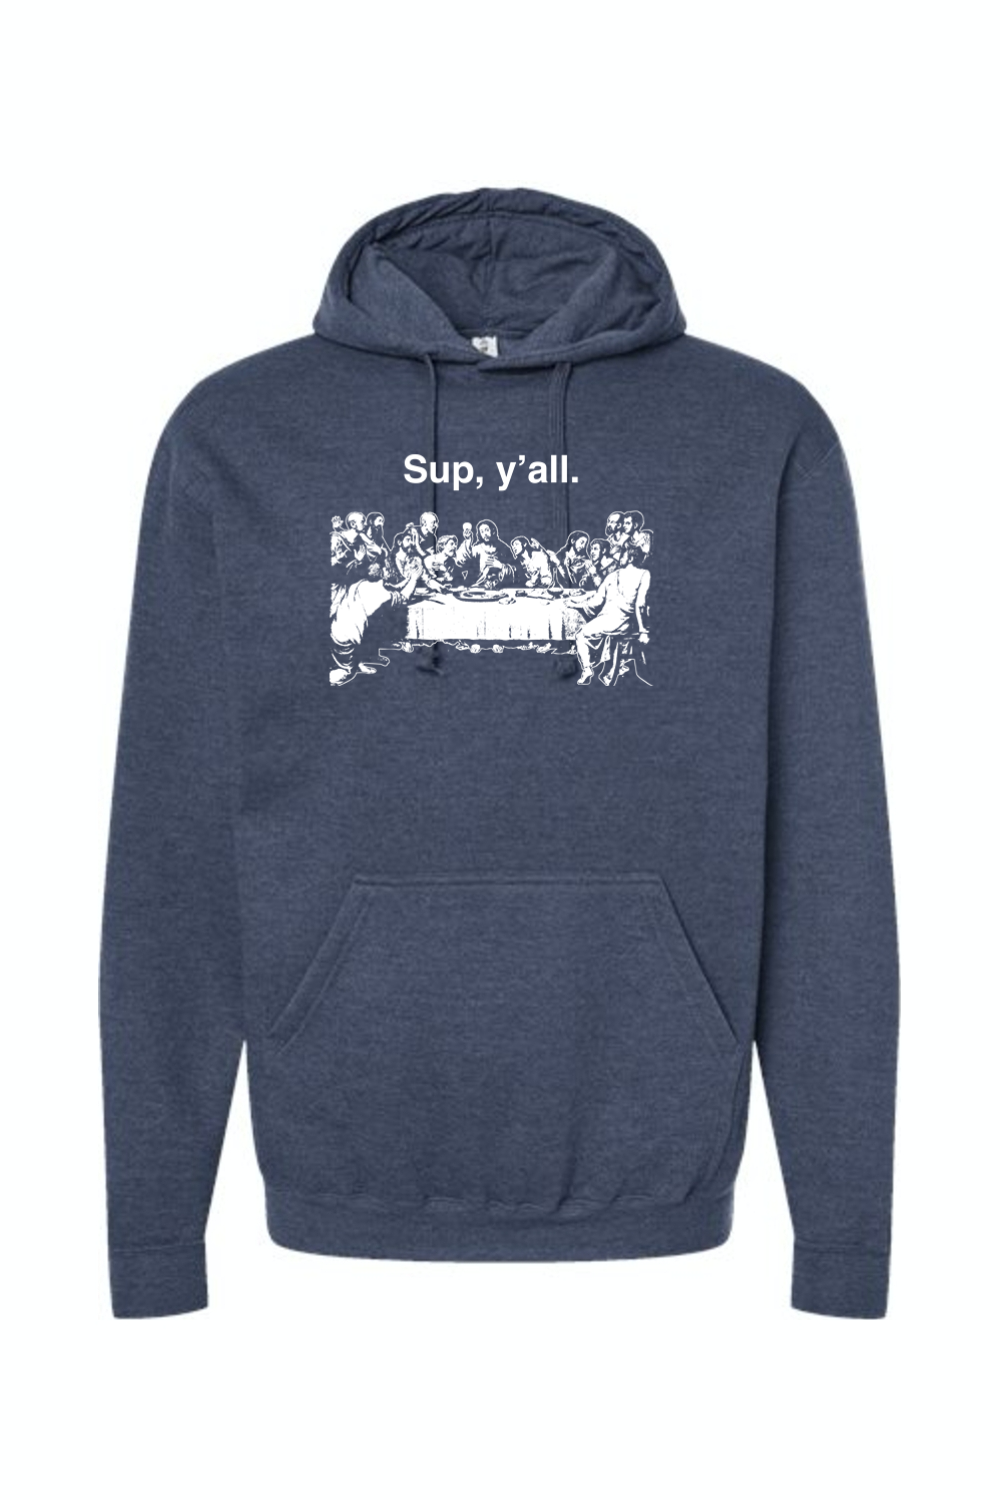 Sup y'all - Last Supper Hoodie Sweatshirt